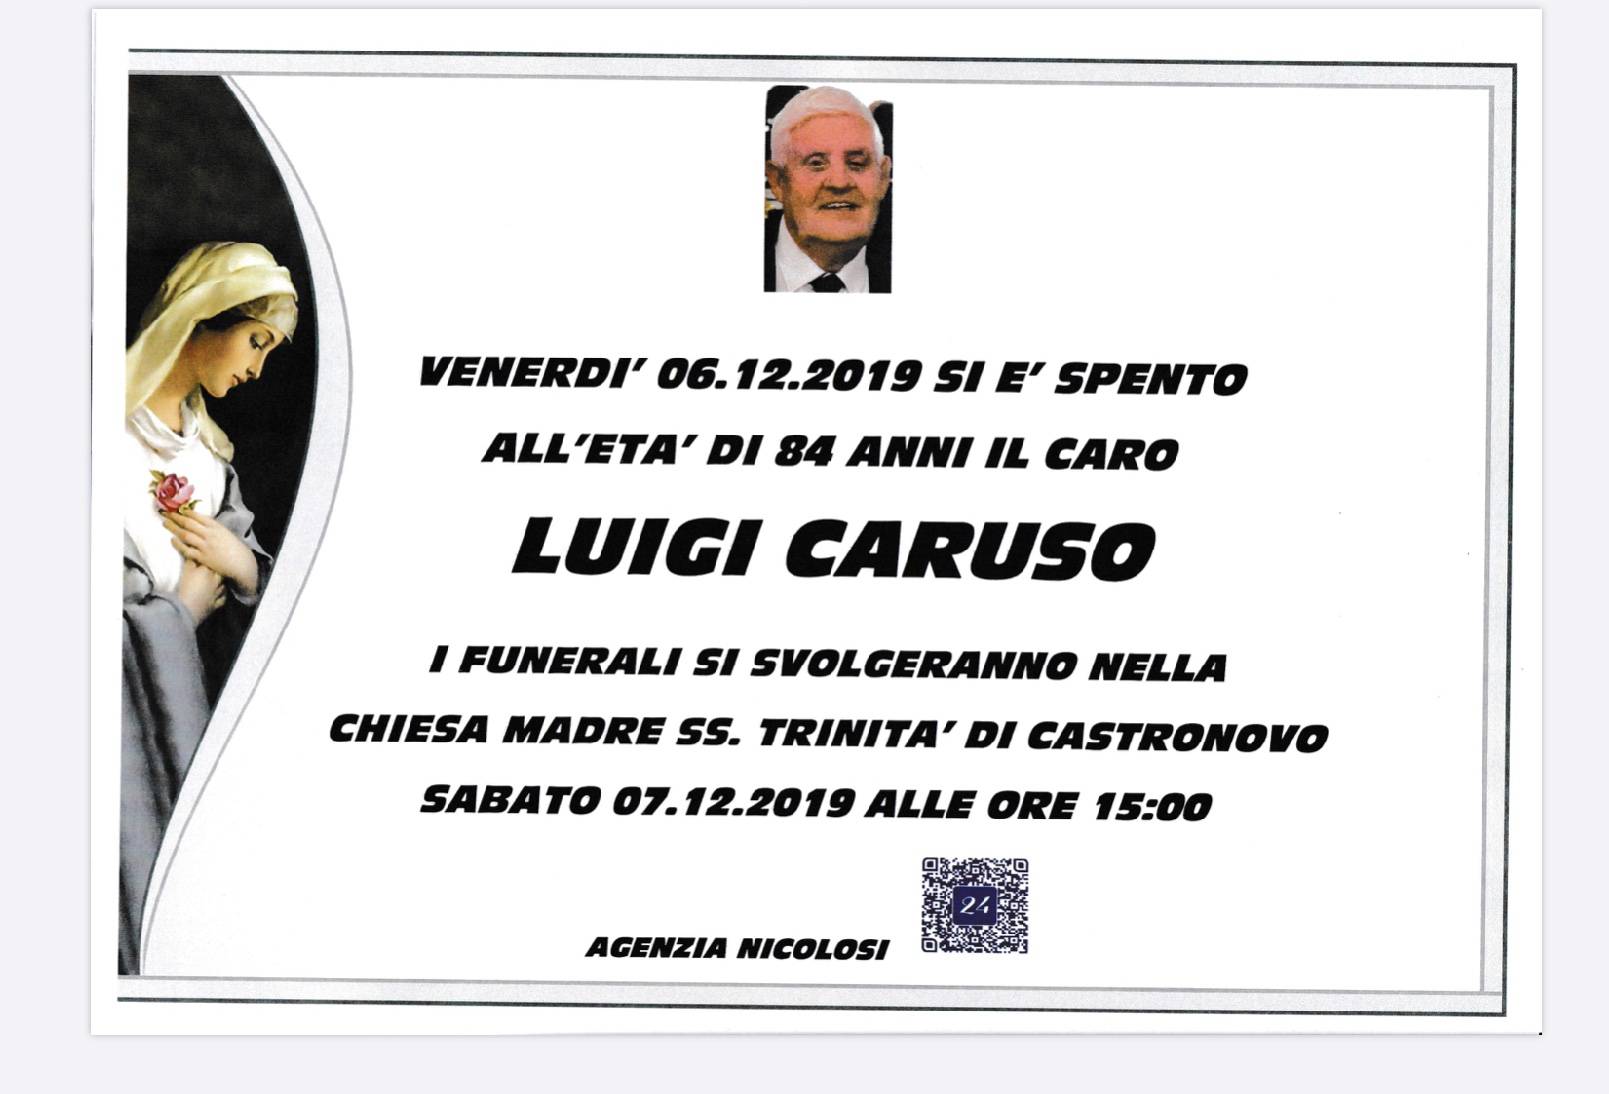 Luigi Caruso